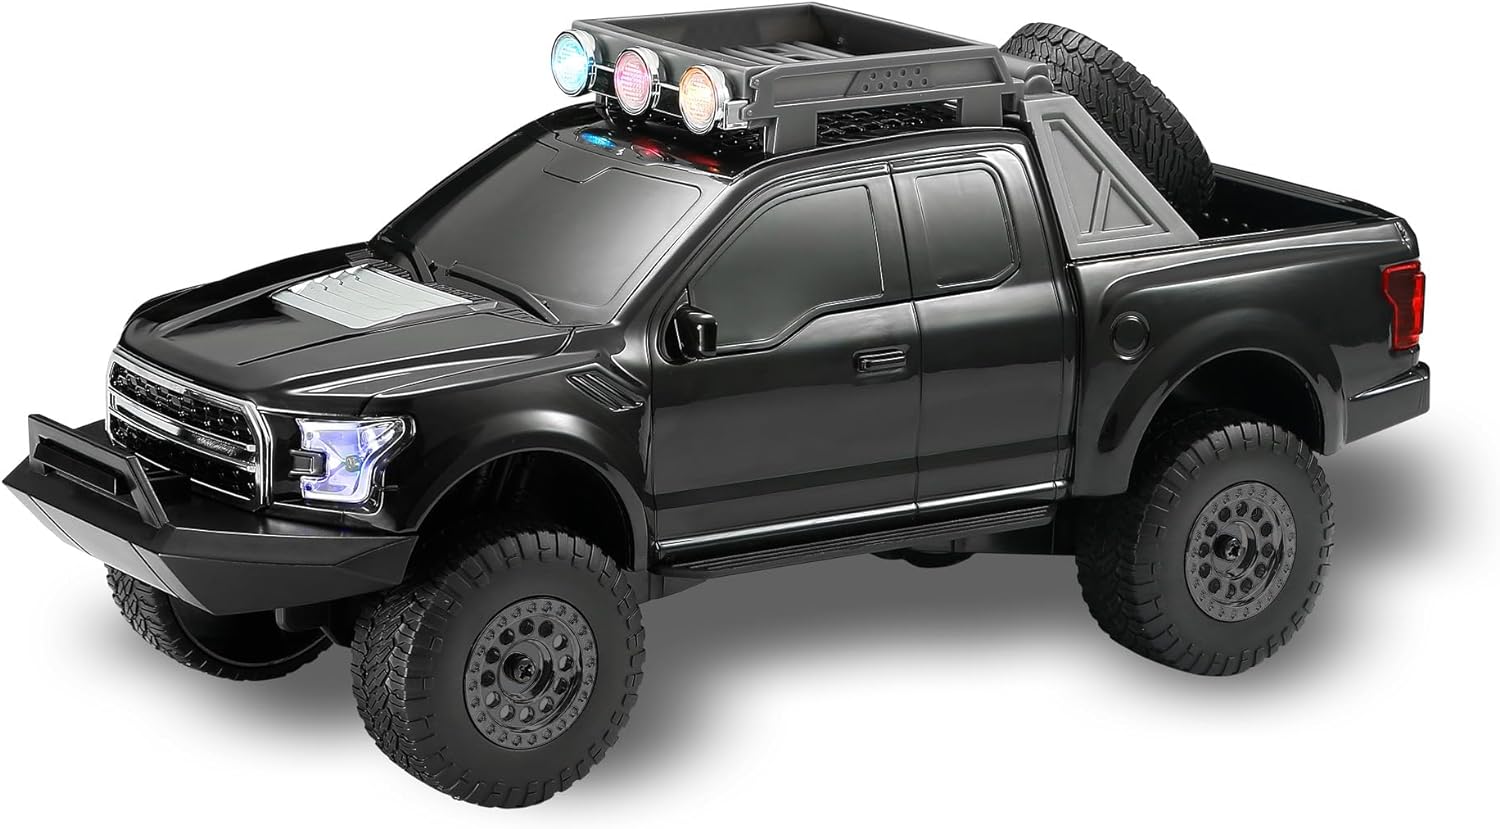 Coches con altavoz Bluetooth (camión negro)